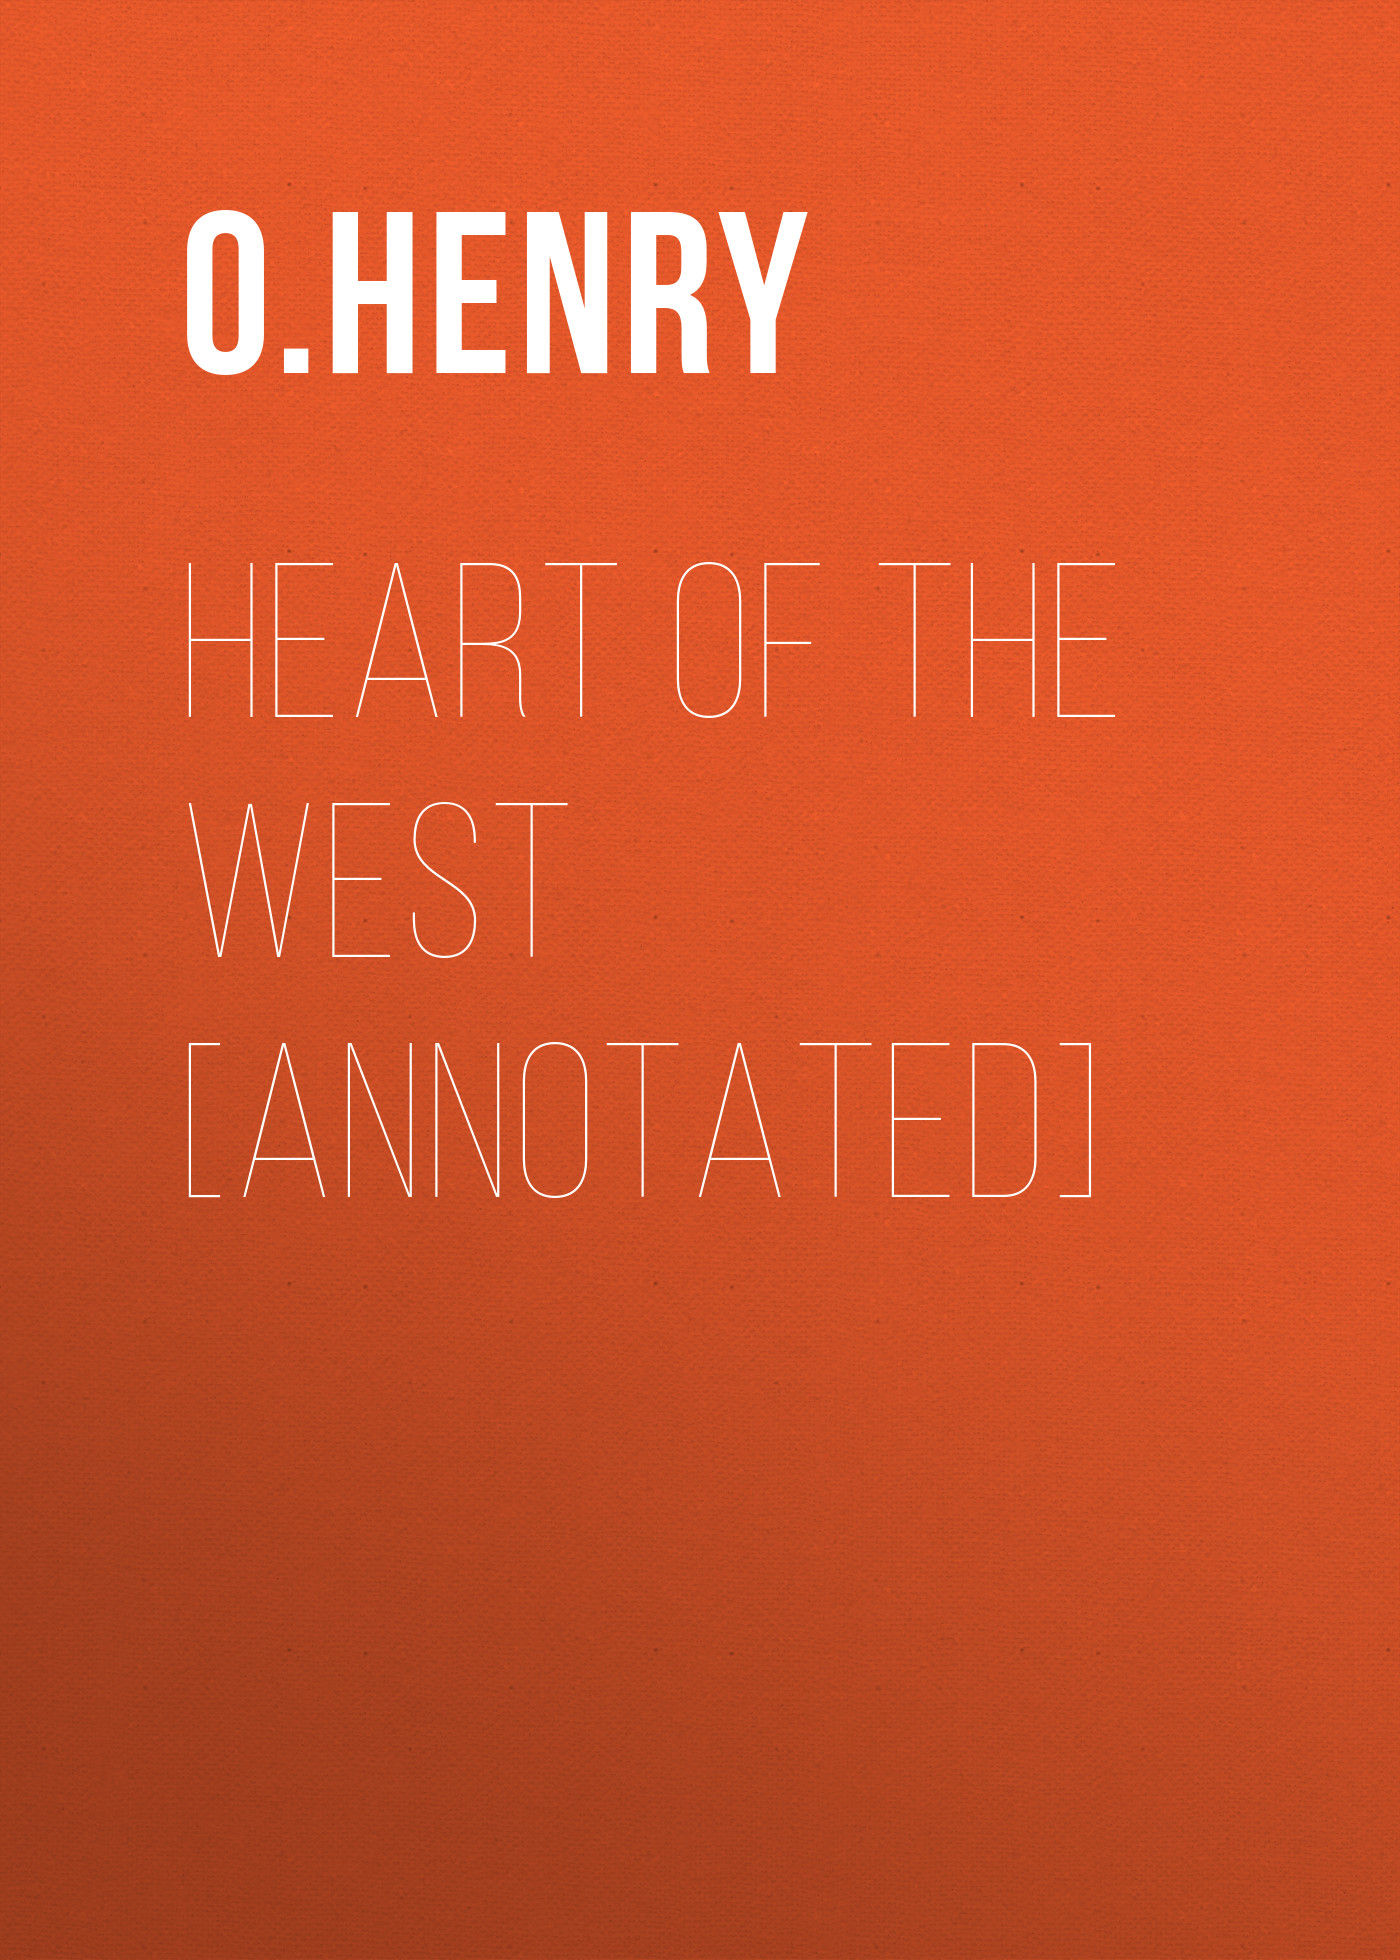 Книга Heart of the West [Annotated] из серии , созданная O. Henry, может относится к жанру Литература 20 века, Зарубежная классика. Стоимость электронной книги Heart of the West [Annotated] с идентификатором 25561004 составляет 0 руб.